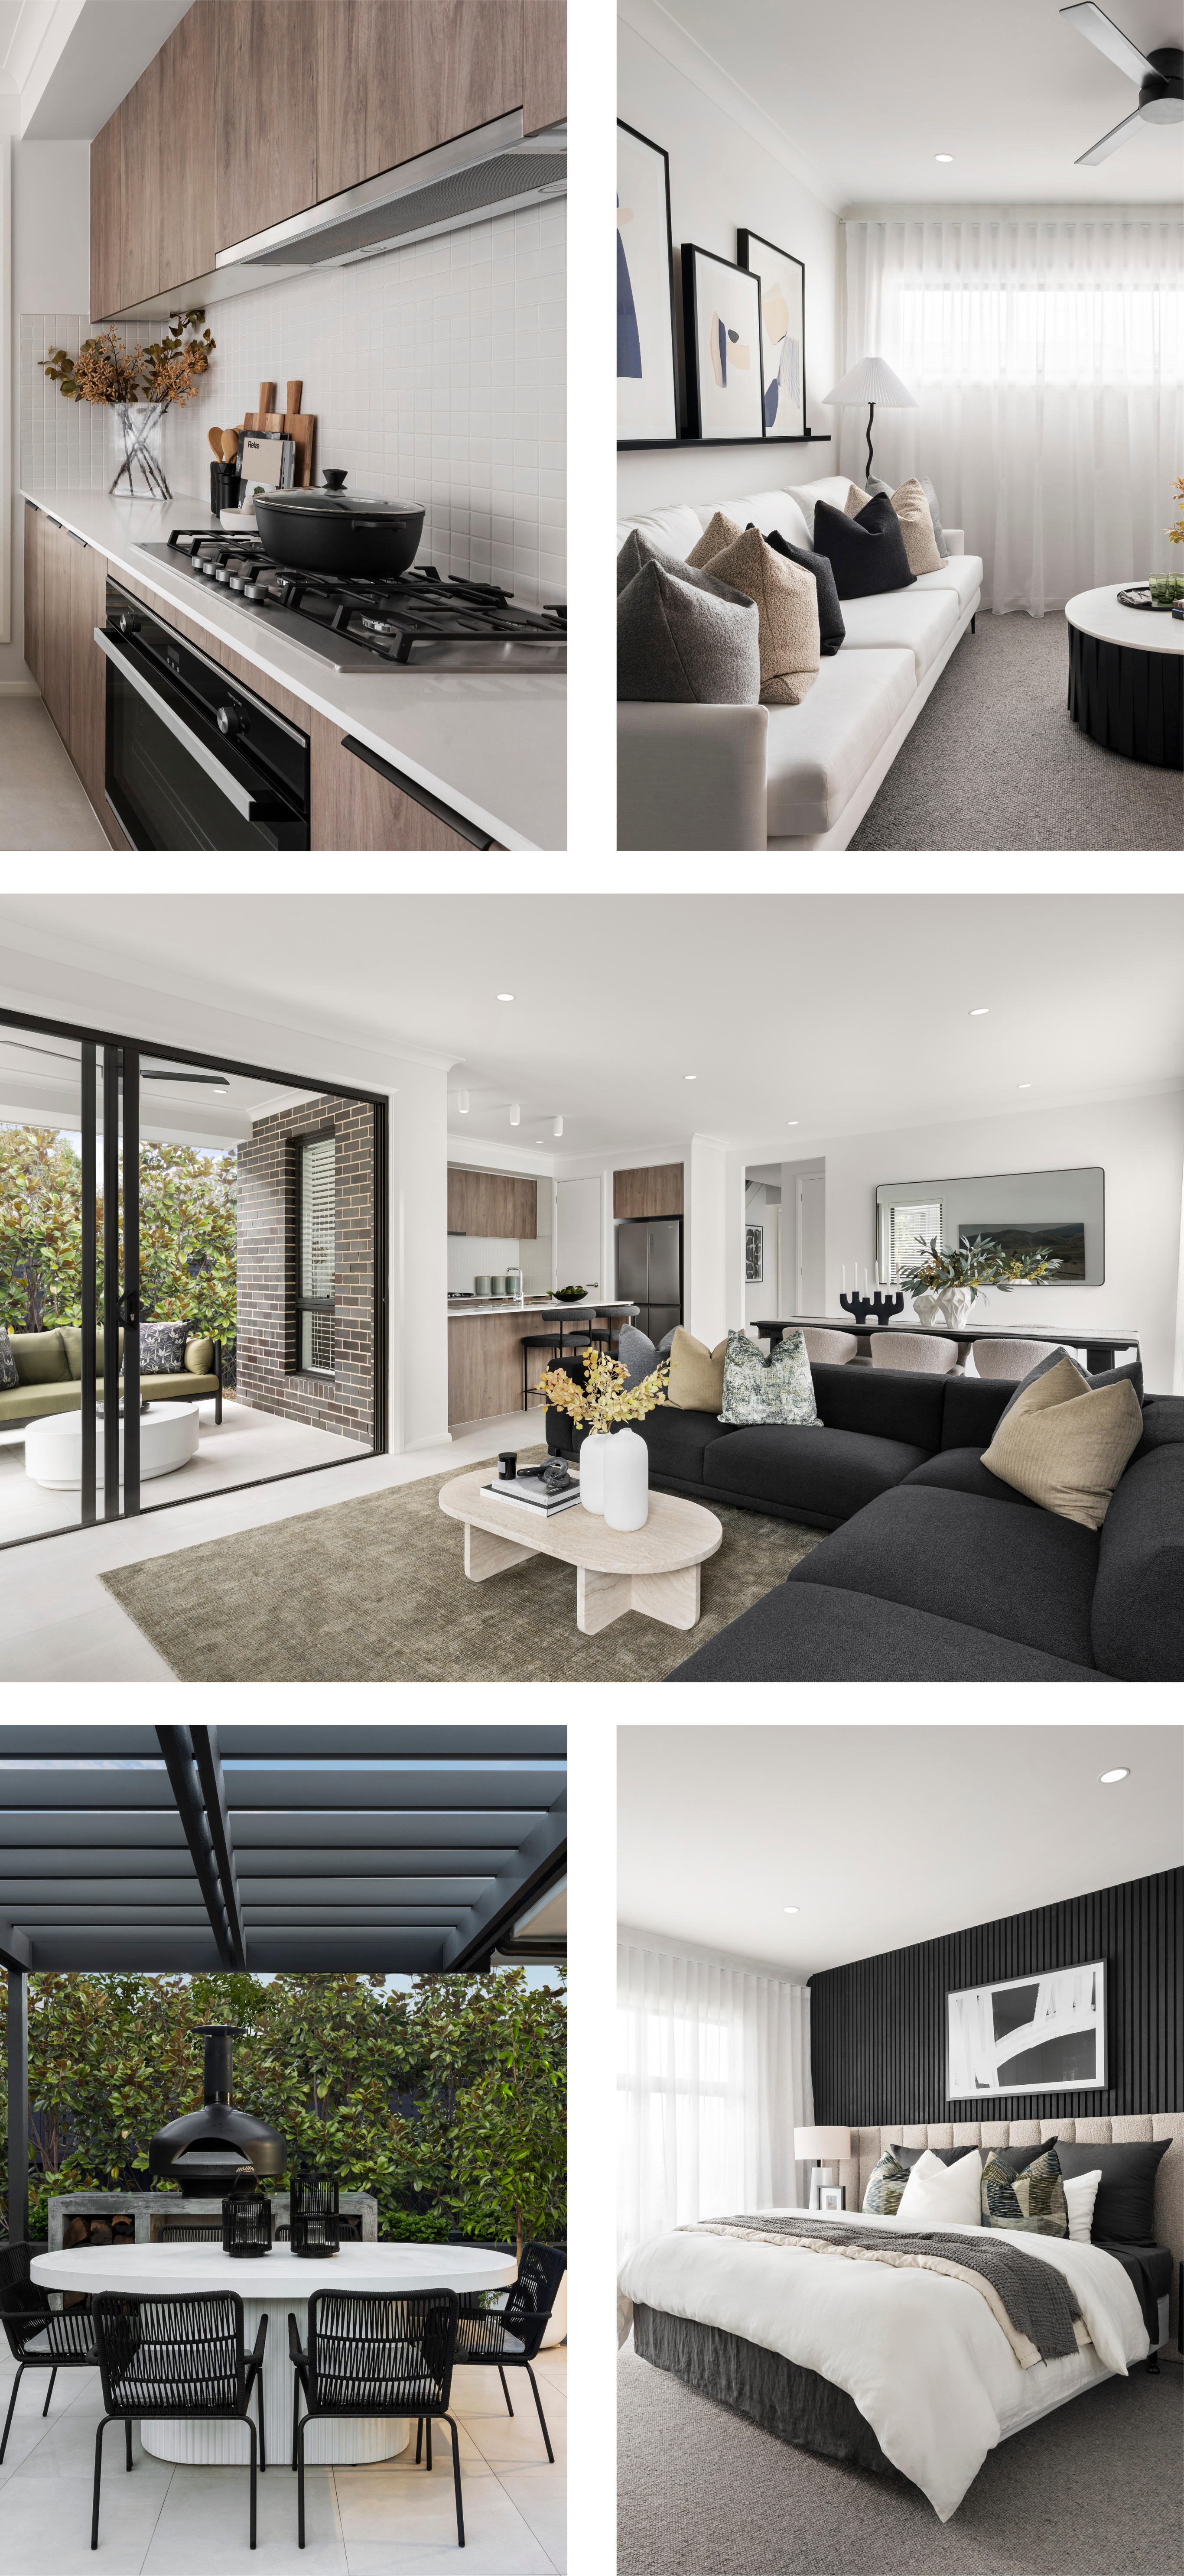 Clemente_two_Storey_home_design_floorplan_Cobbitty_sydney_builder